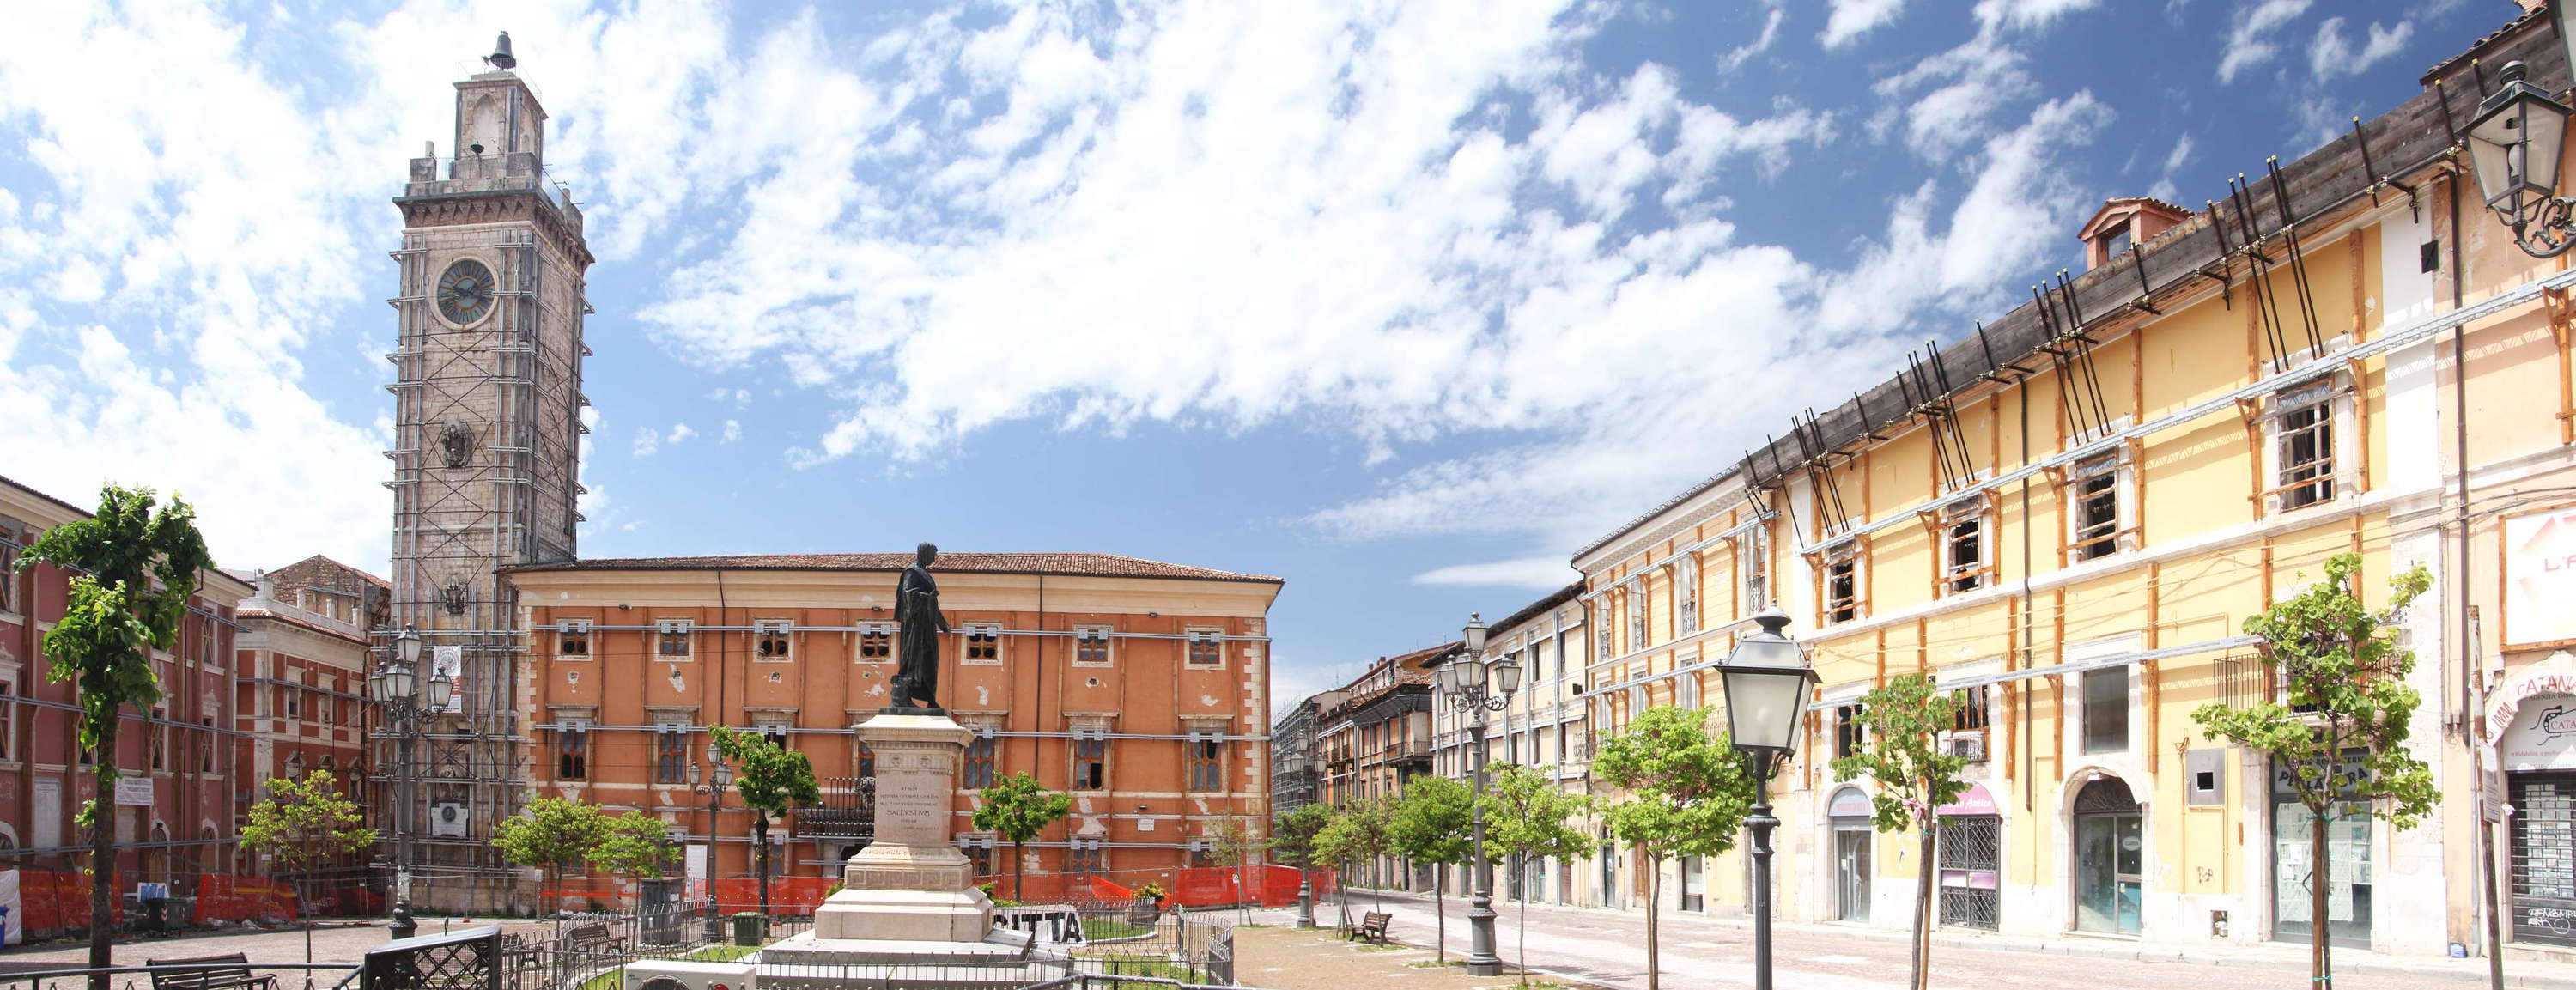 L'Aquila | Piazza del Palazzo panorama